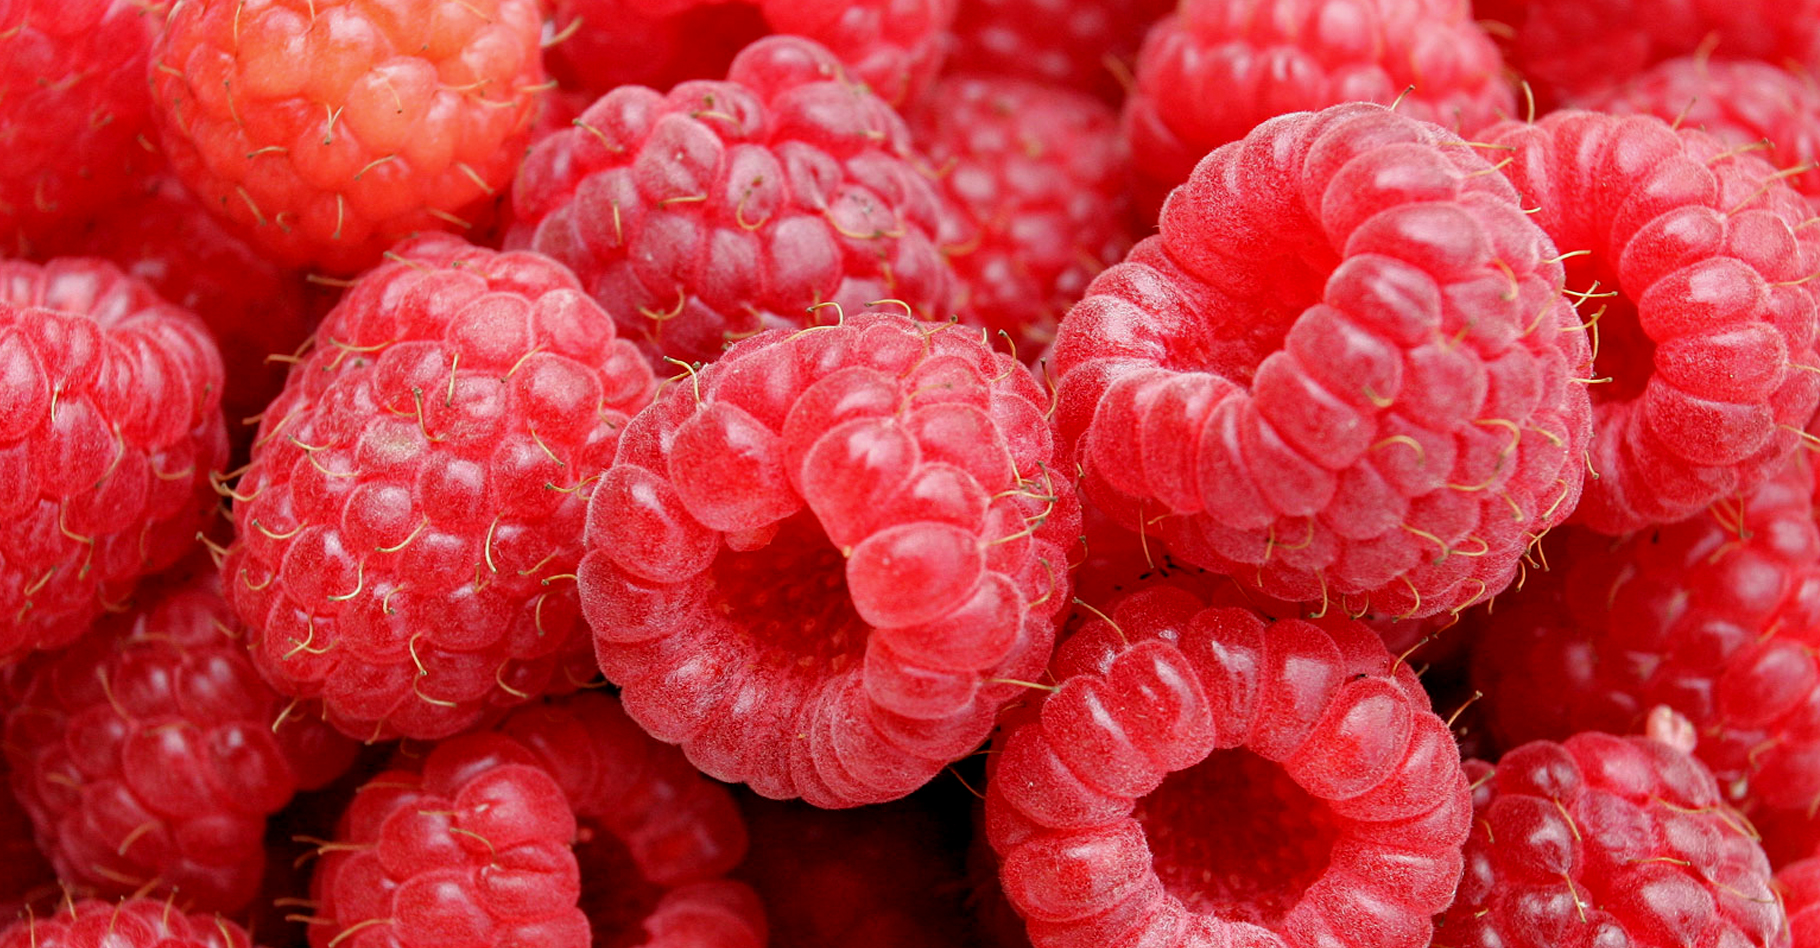 Les framboises sont des petits fruits rouges peu sucrés. © Fir0002, CC by-nc 2.0